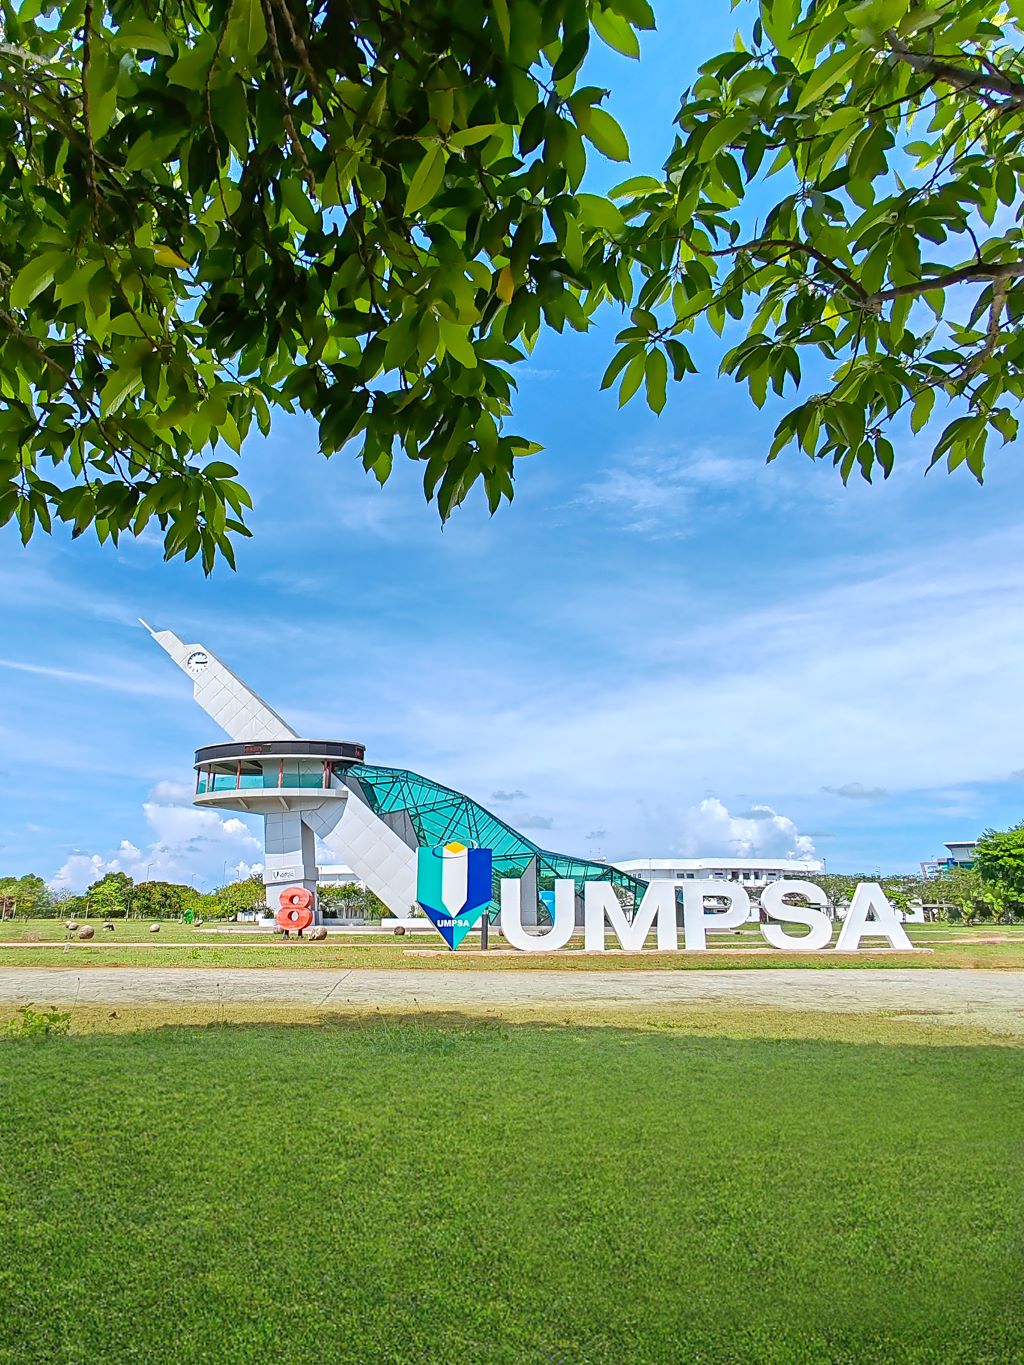 Menara Jam yang merupakan simbolik kepada Universiti Malaysia Pahang Al-Sultan Abdullah (UMP) ini terletak di kampus Pekan. Ia mulai dibina pada 3 Ogos 2016 dan siap sepenuhnya pada 25 November 2016.